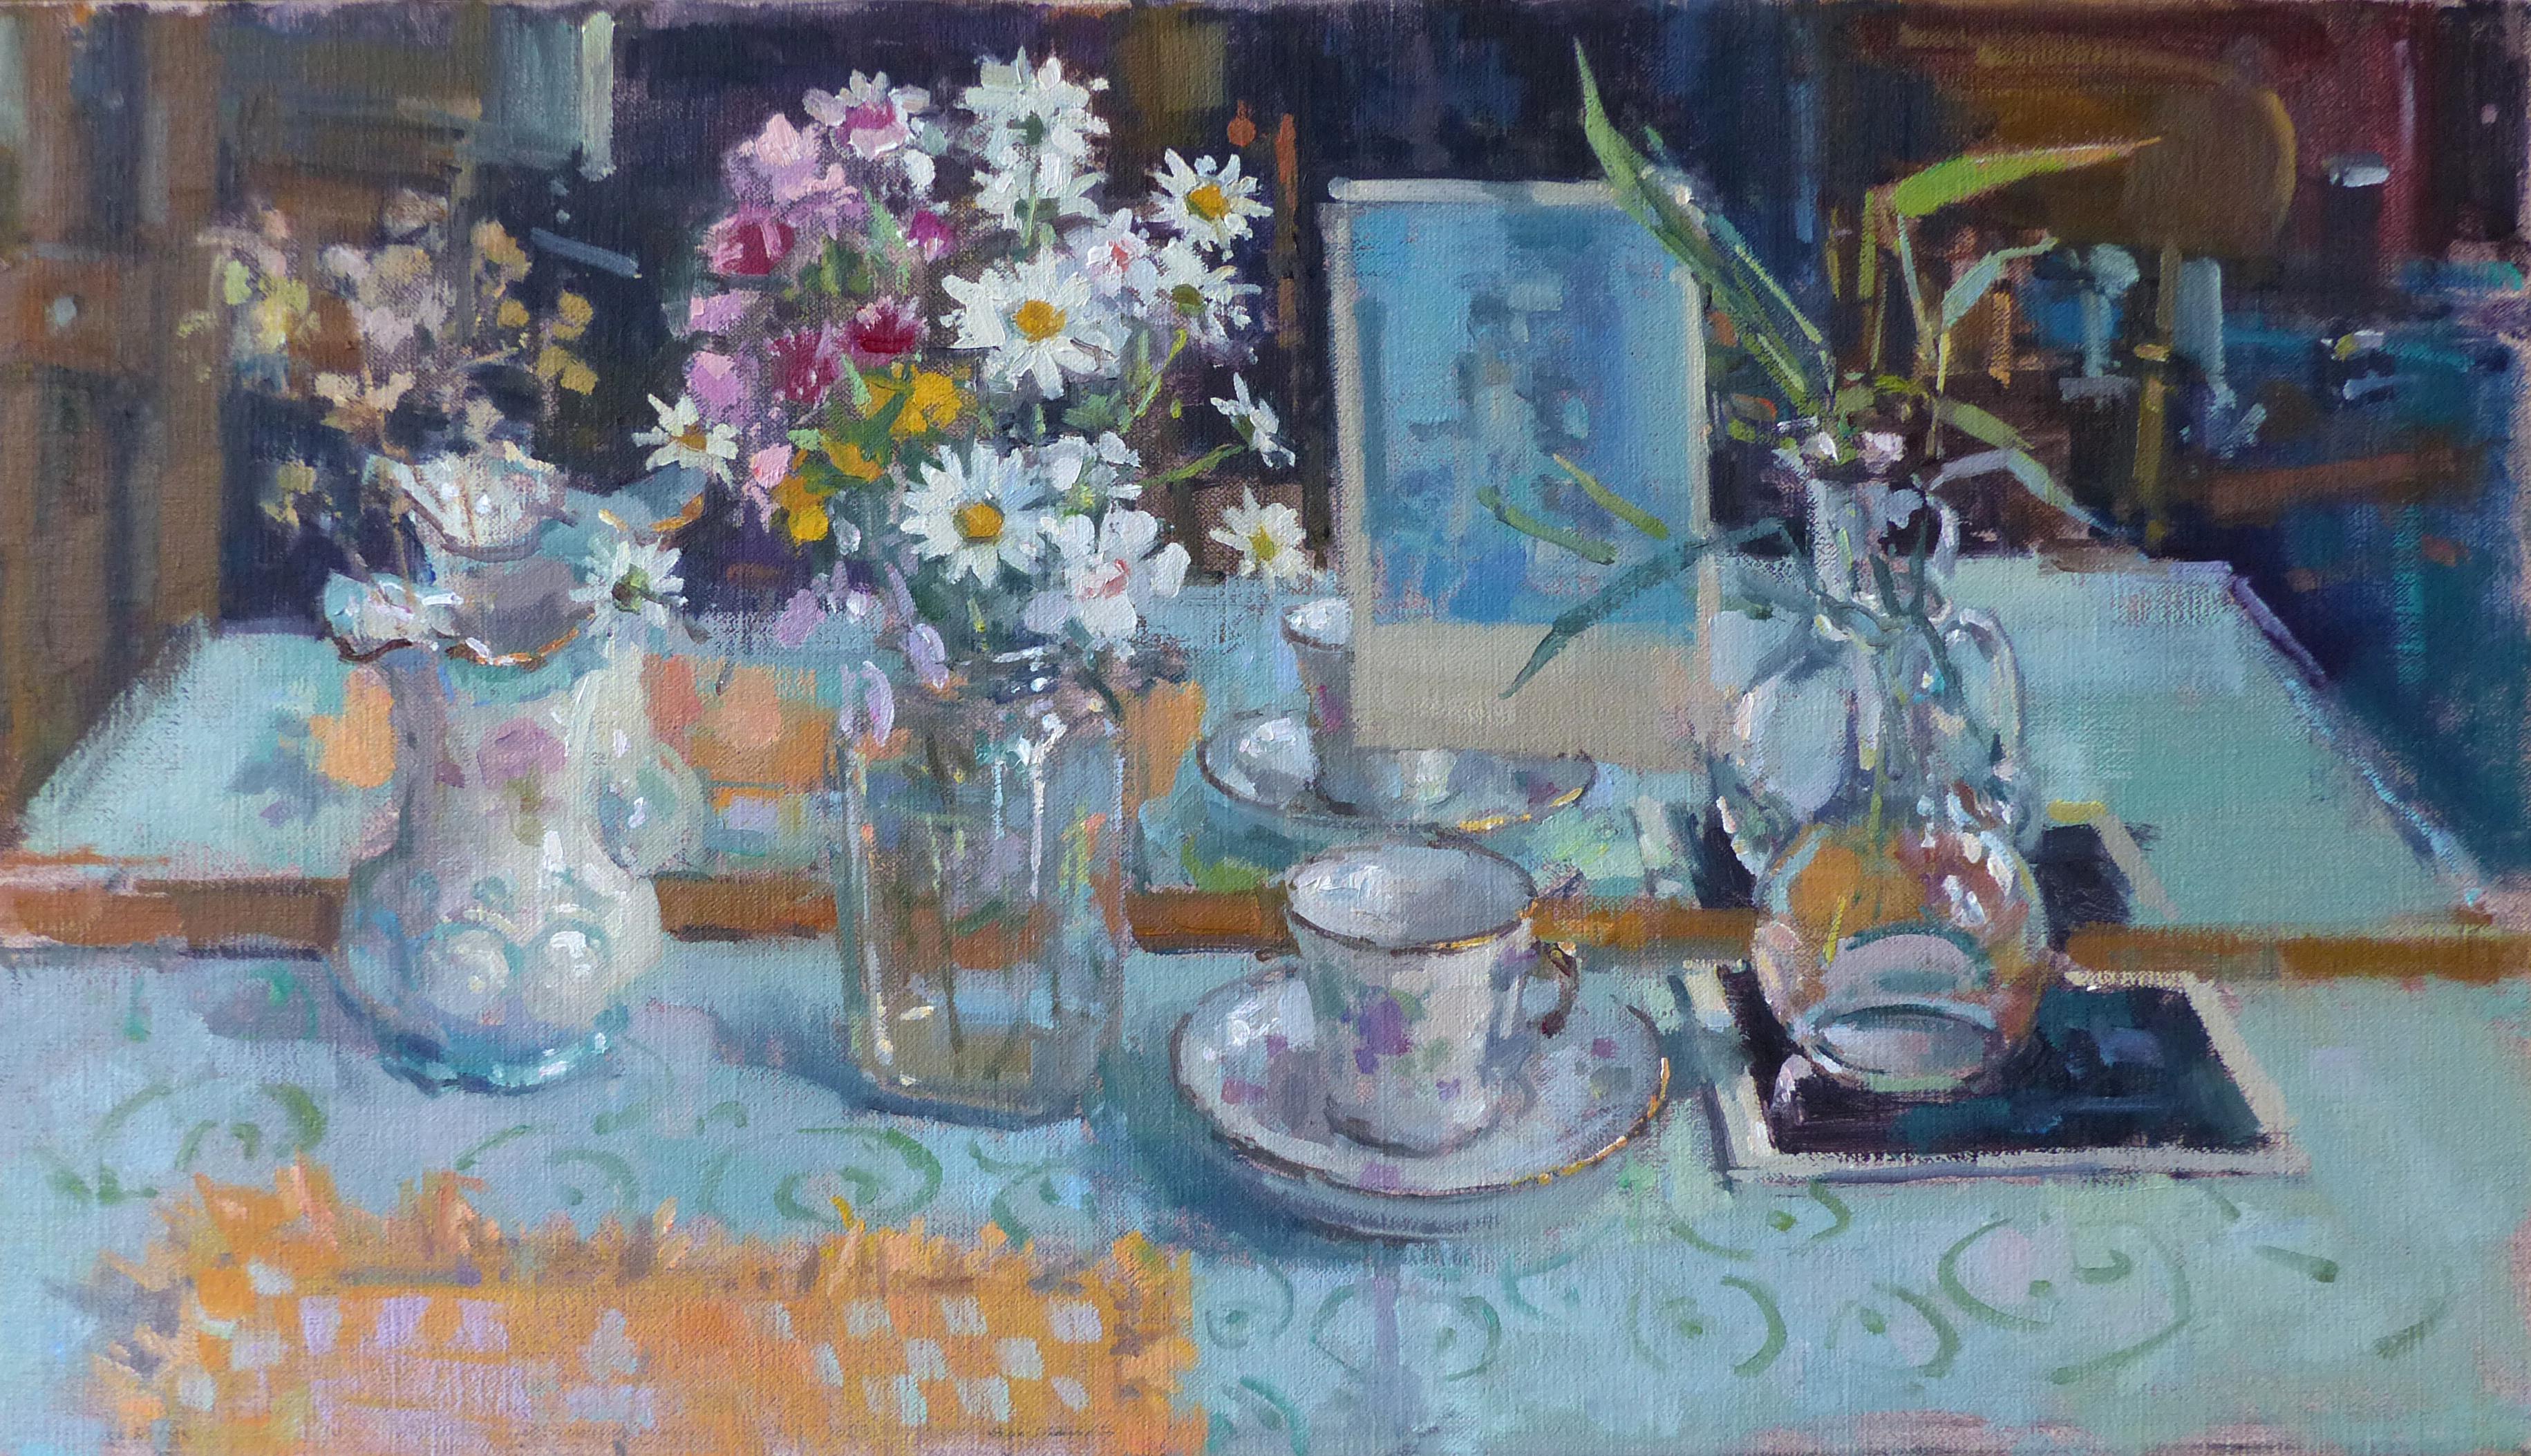 John D Martin RBA Abstract Painting – Sommerblumen - original florales impressionistisches Ölgemälde - zeitgenössische Kunst